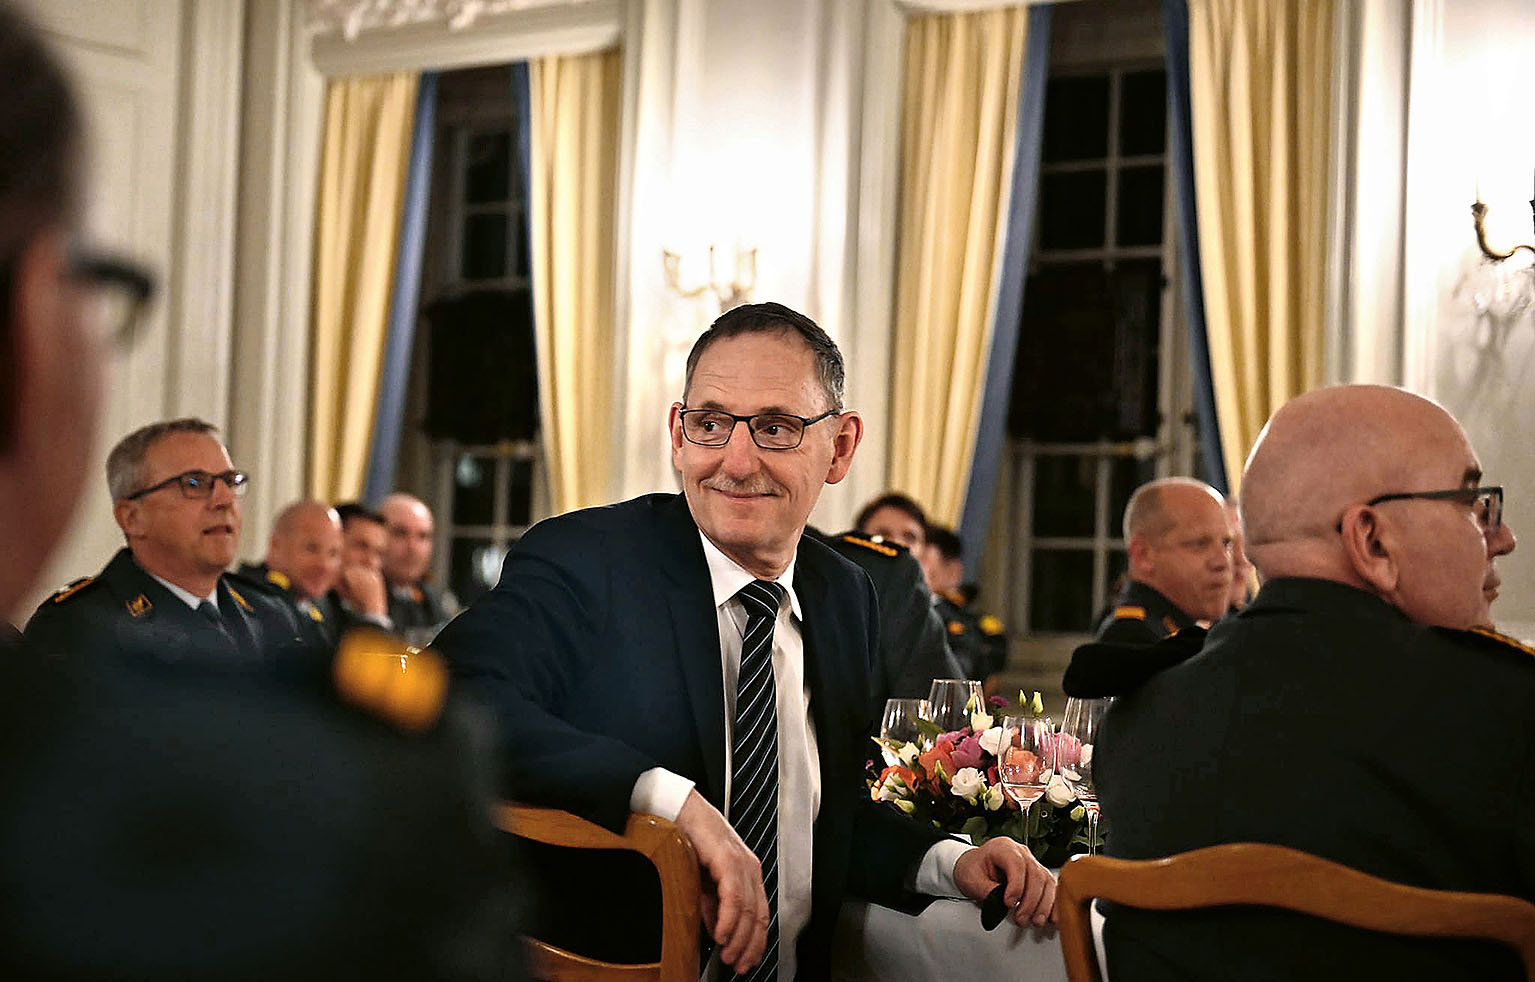 Am Treffen der höheren Stabsoffizieren: Mario Fehr sitzt mit anderen Personen an einem Tisch und lac...